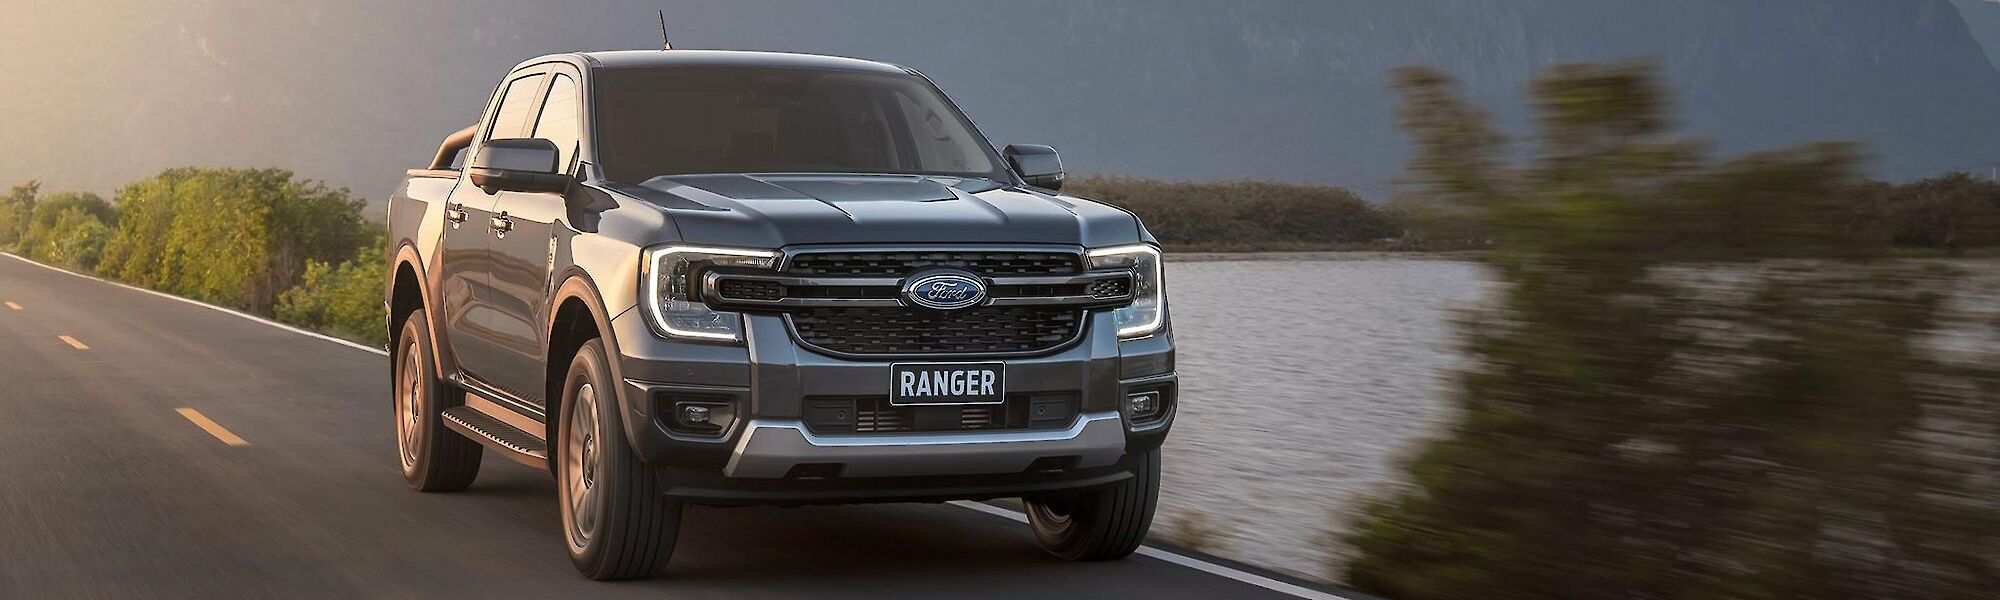 Új Ford Ranger halad az úton